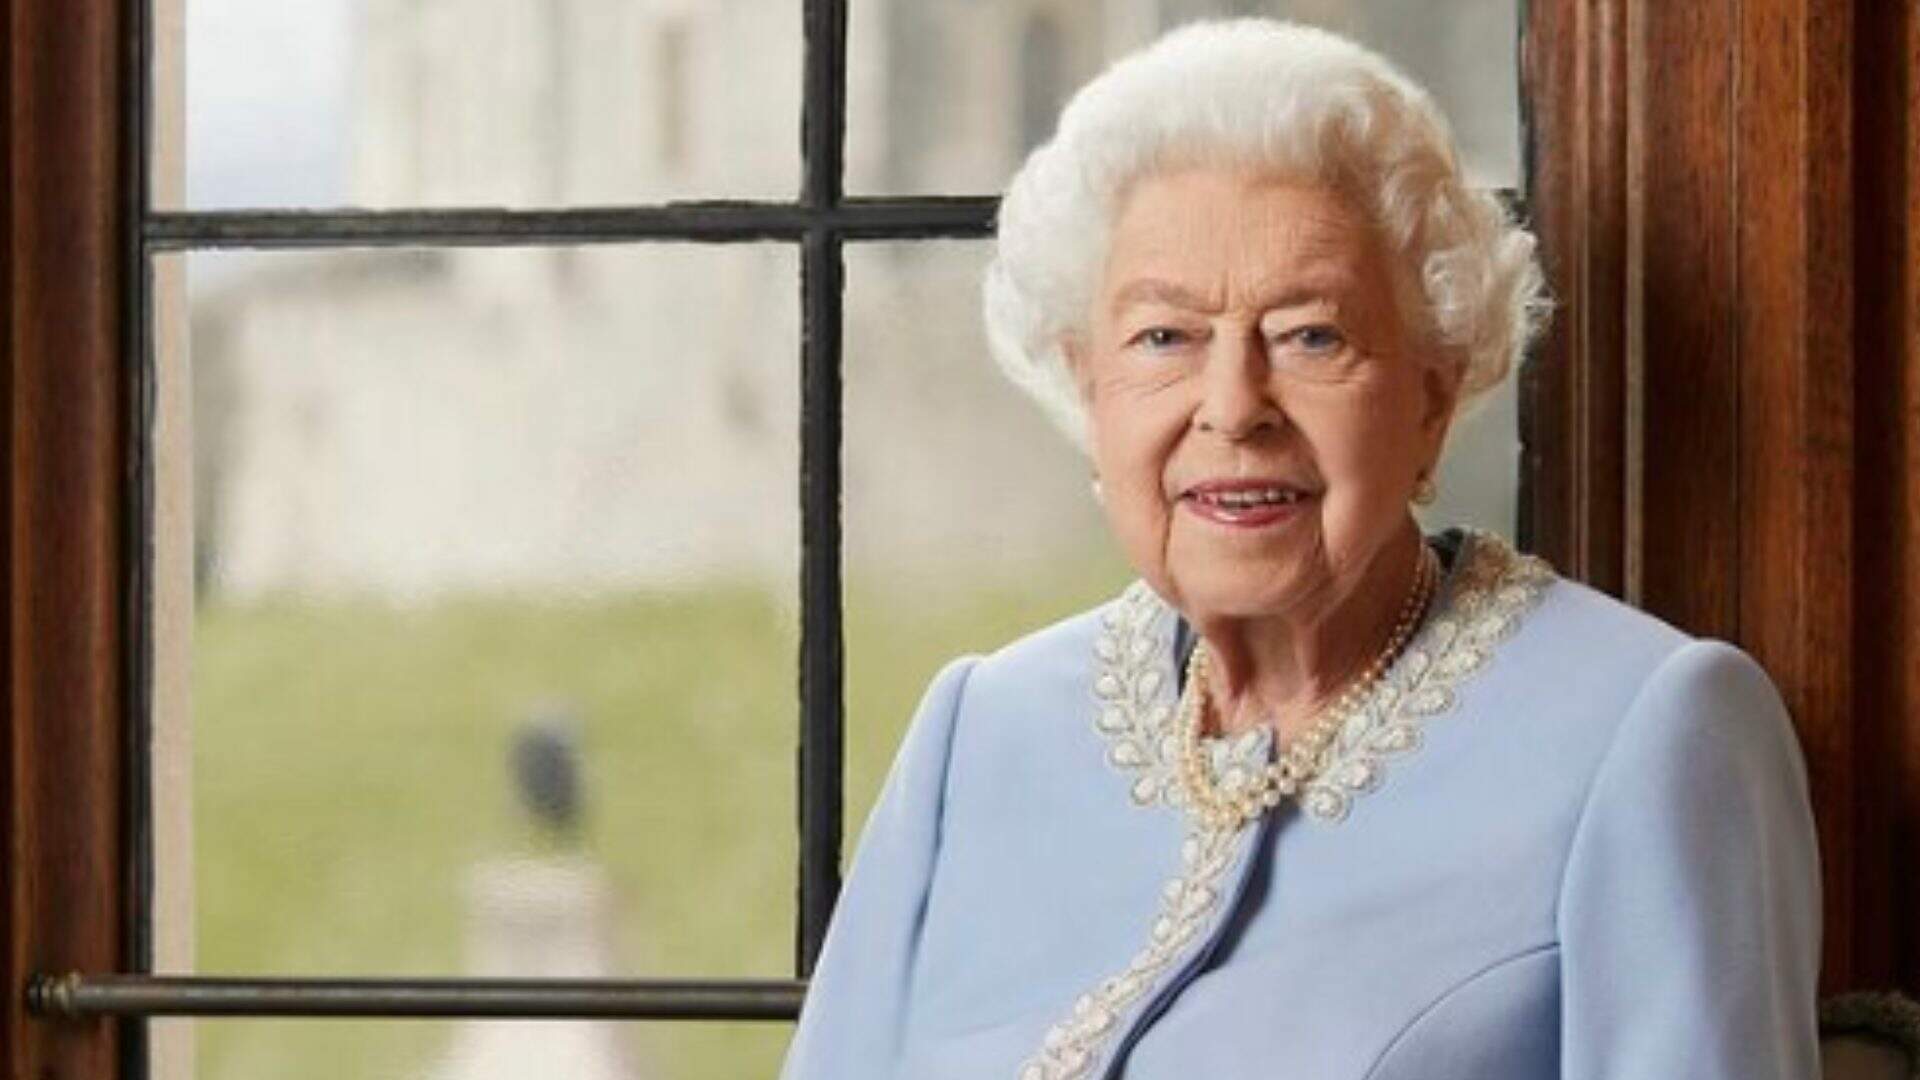 Presidenciáveis comentam morte da Rainha Elizabeth II